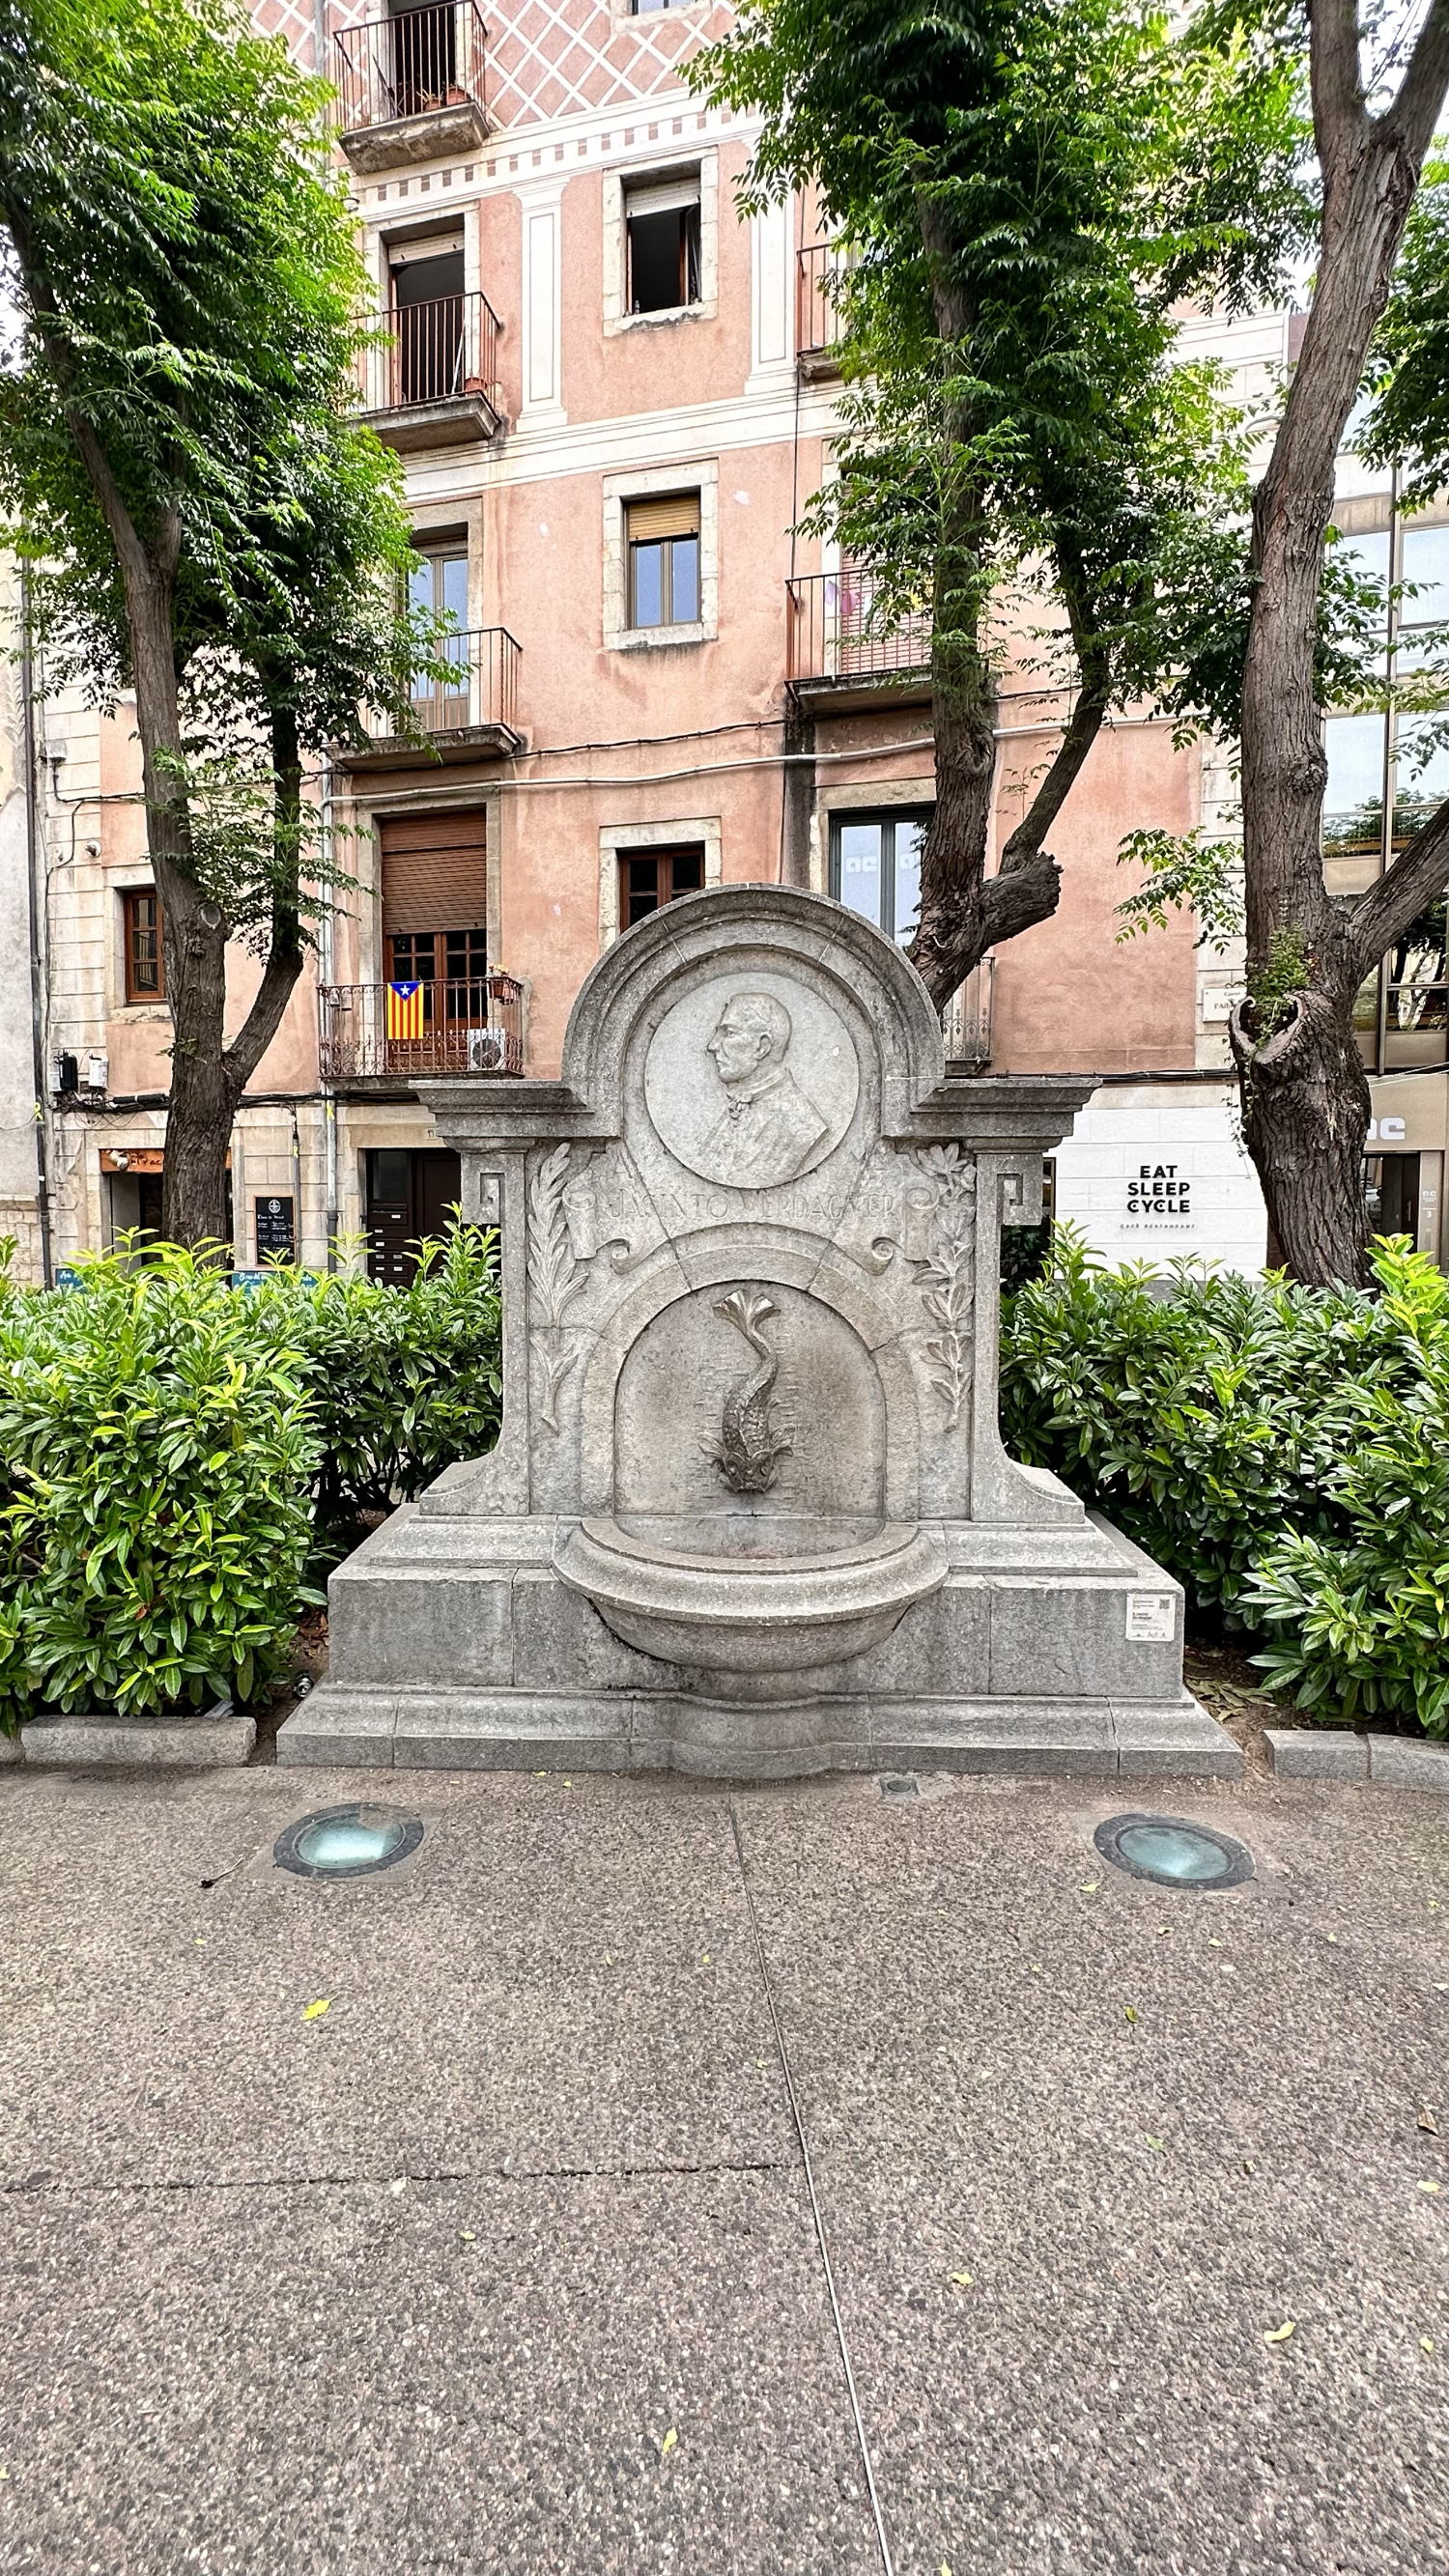 莫森·辛托·贝达格尔饮水机纪念雕塑Font de Mossè